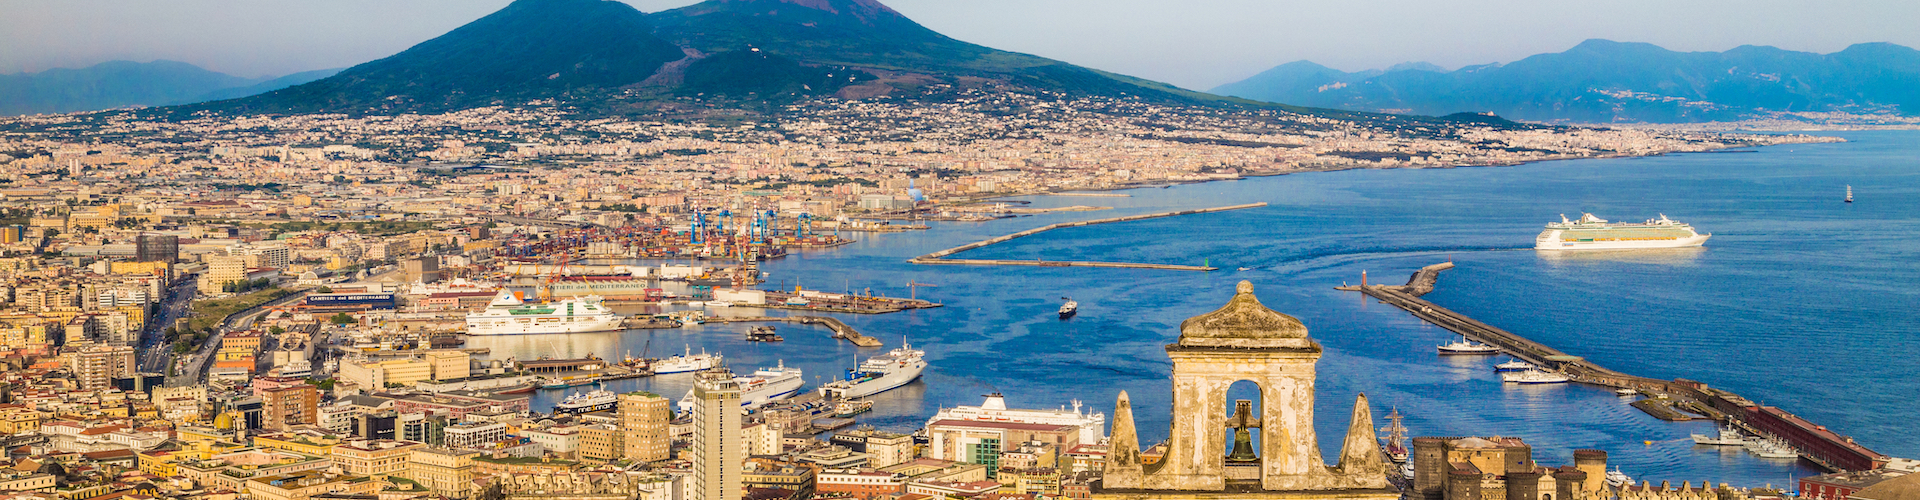 Napoli, la città del presepe